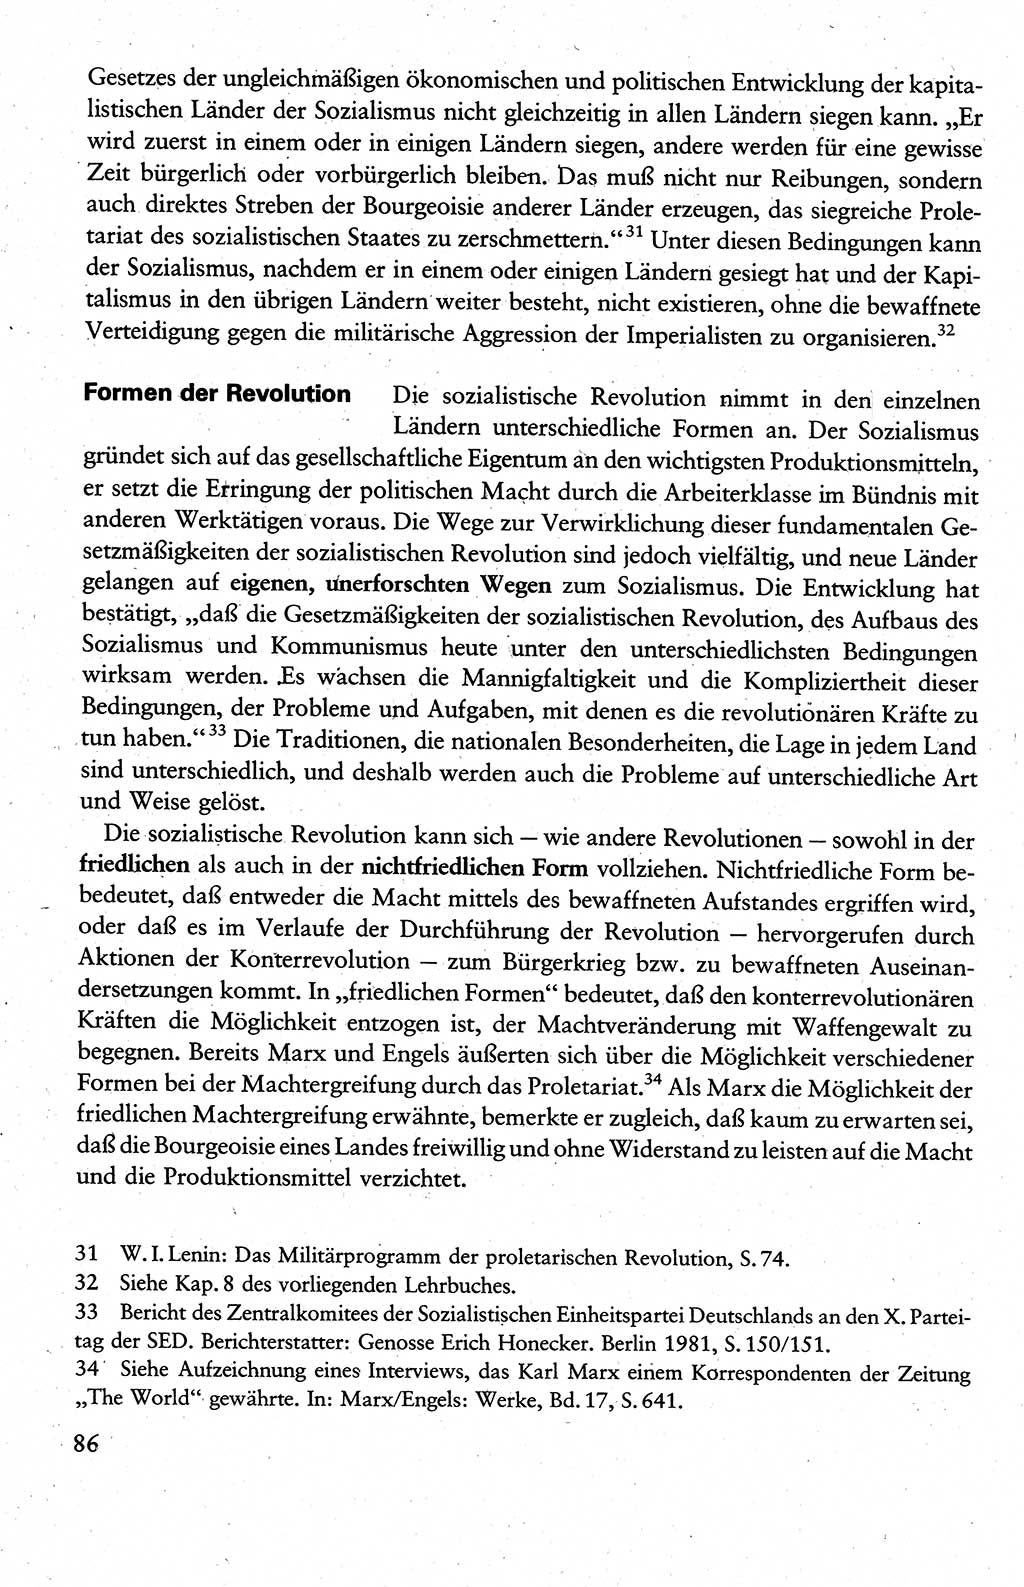 Wissenschaftlicher Kommunismus [Deutsche Demokratische Republik (DDR)], Lehrbuch für das marxistisch-leninistische Grundlagenstudium 1983, Seite 86 (Wiss. Komm. DDR Lb. 1983, S. 86)